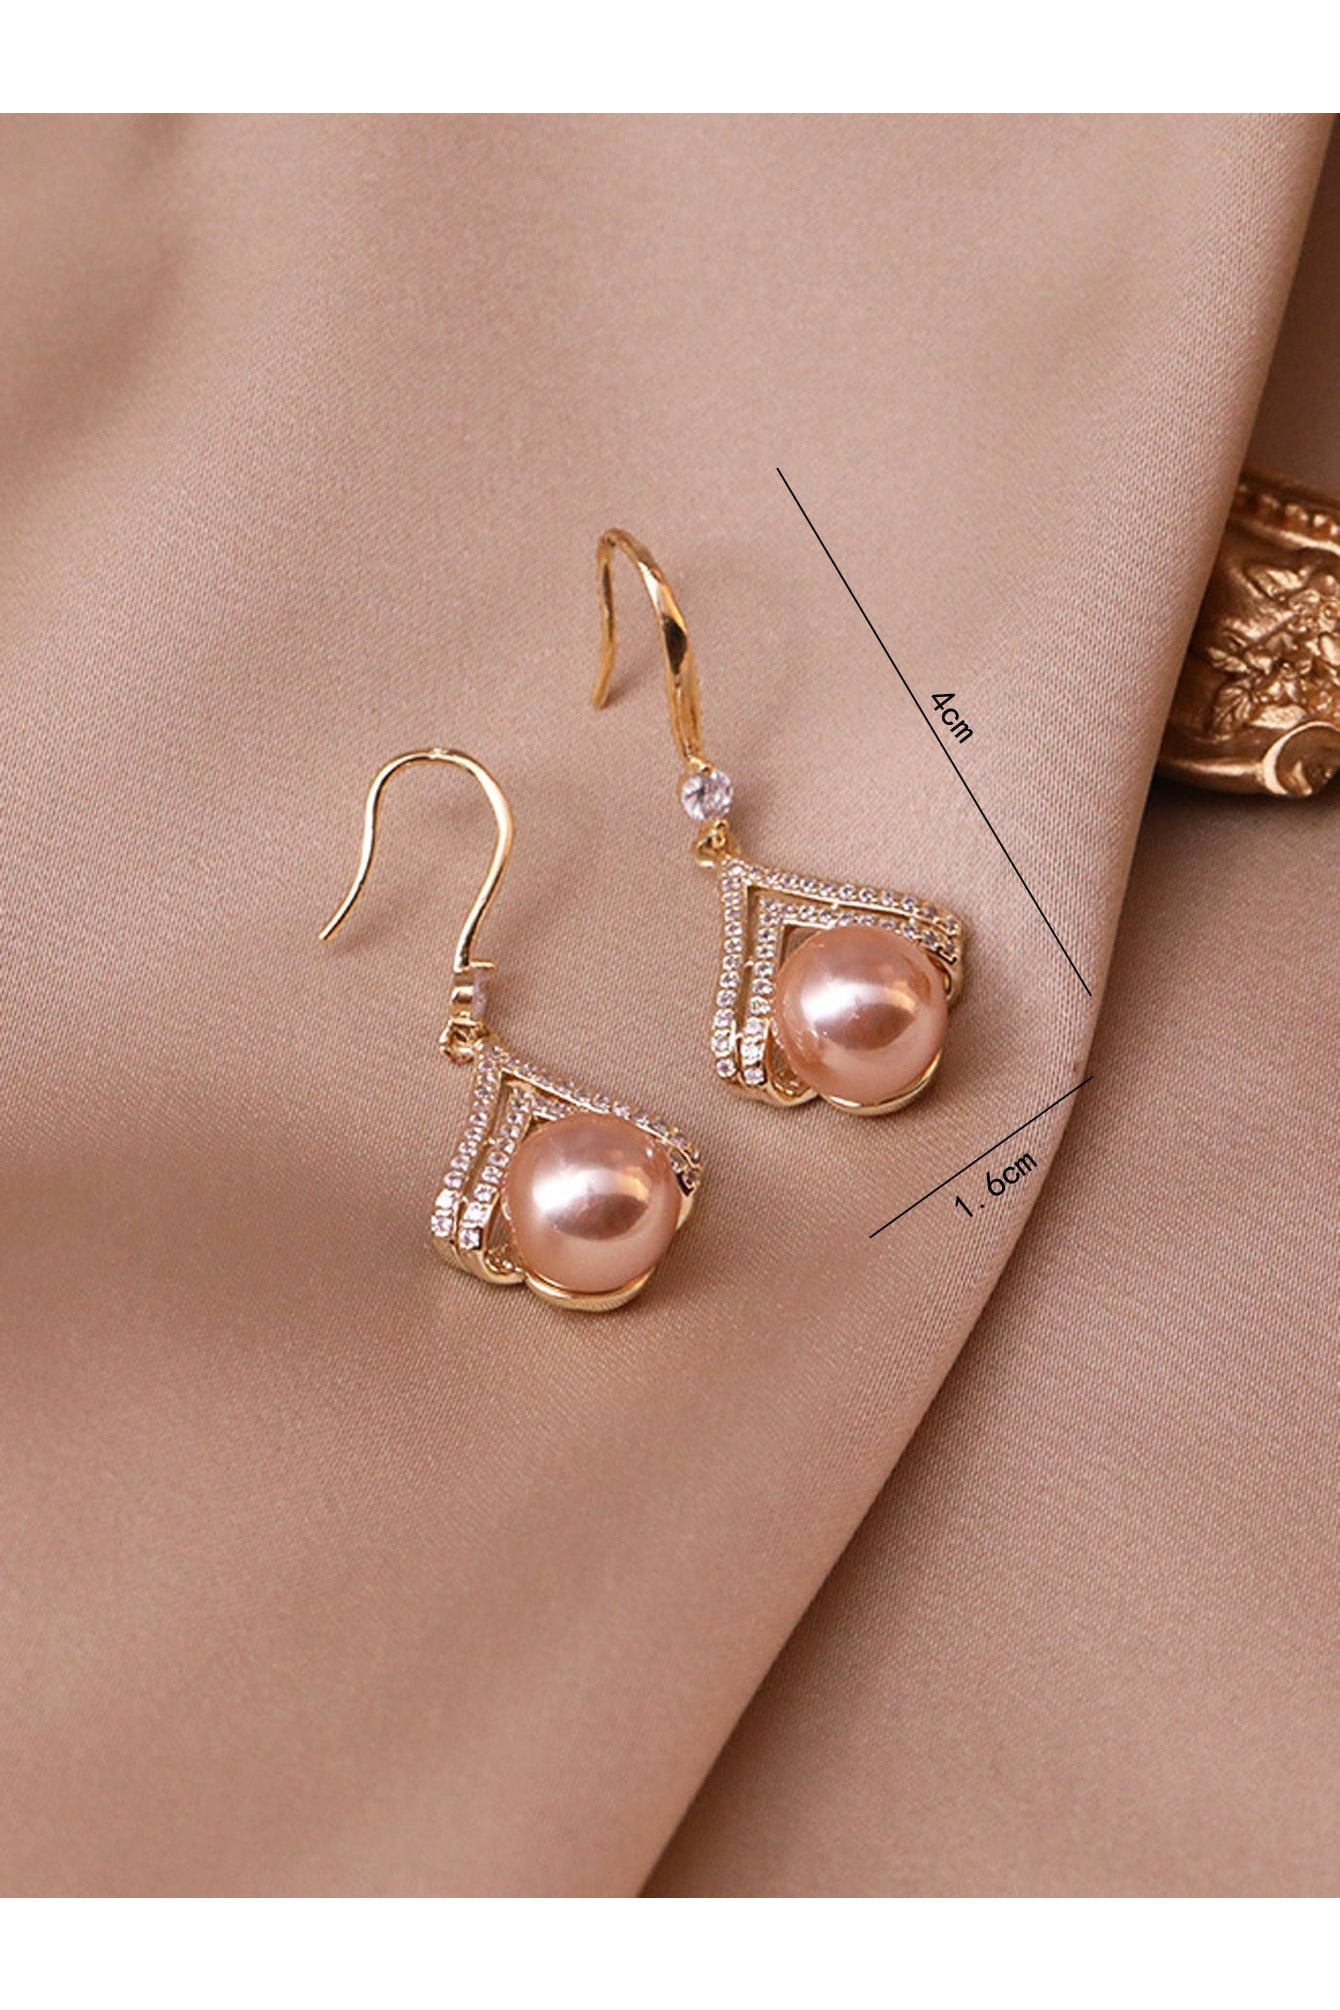 Buy Shein Rhinestone & Faux Pearl Drop Earrings in Pakistan